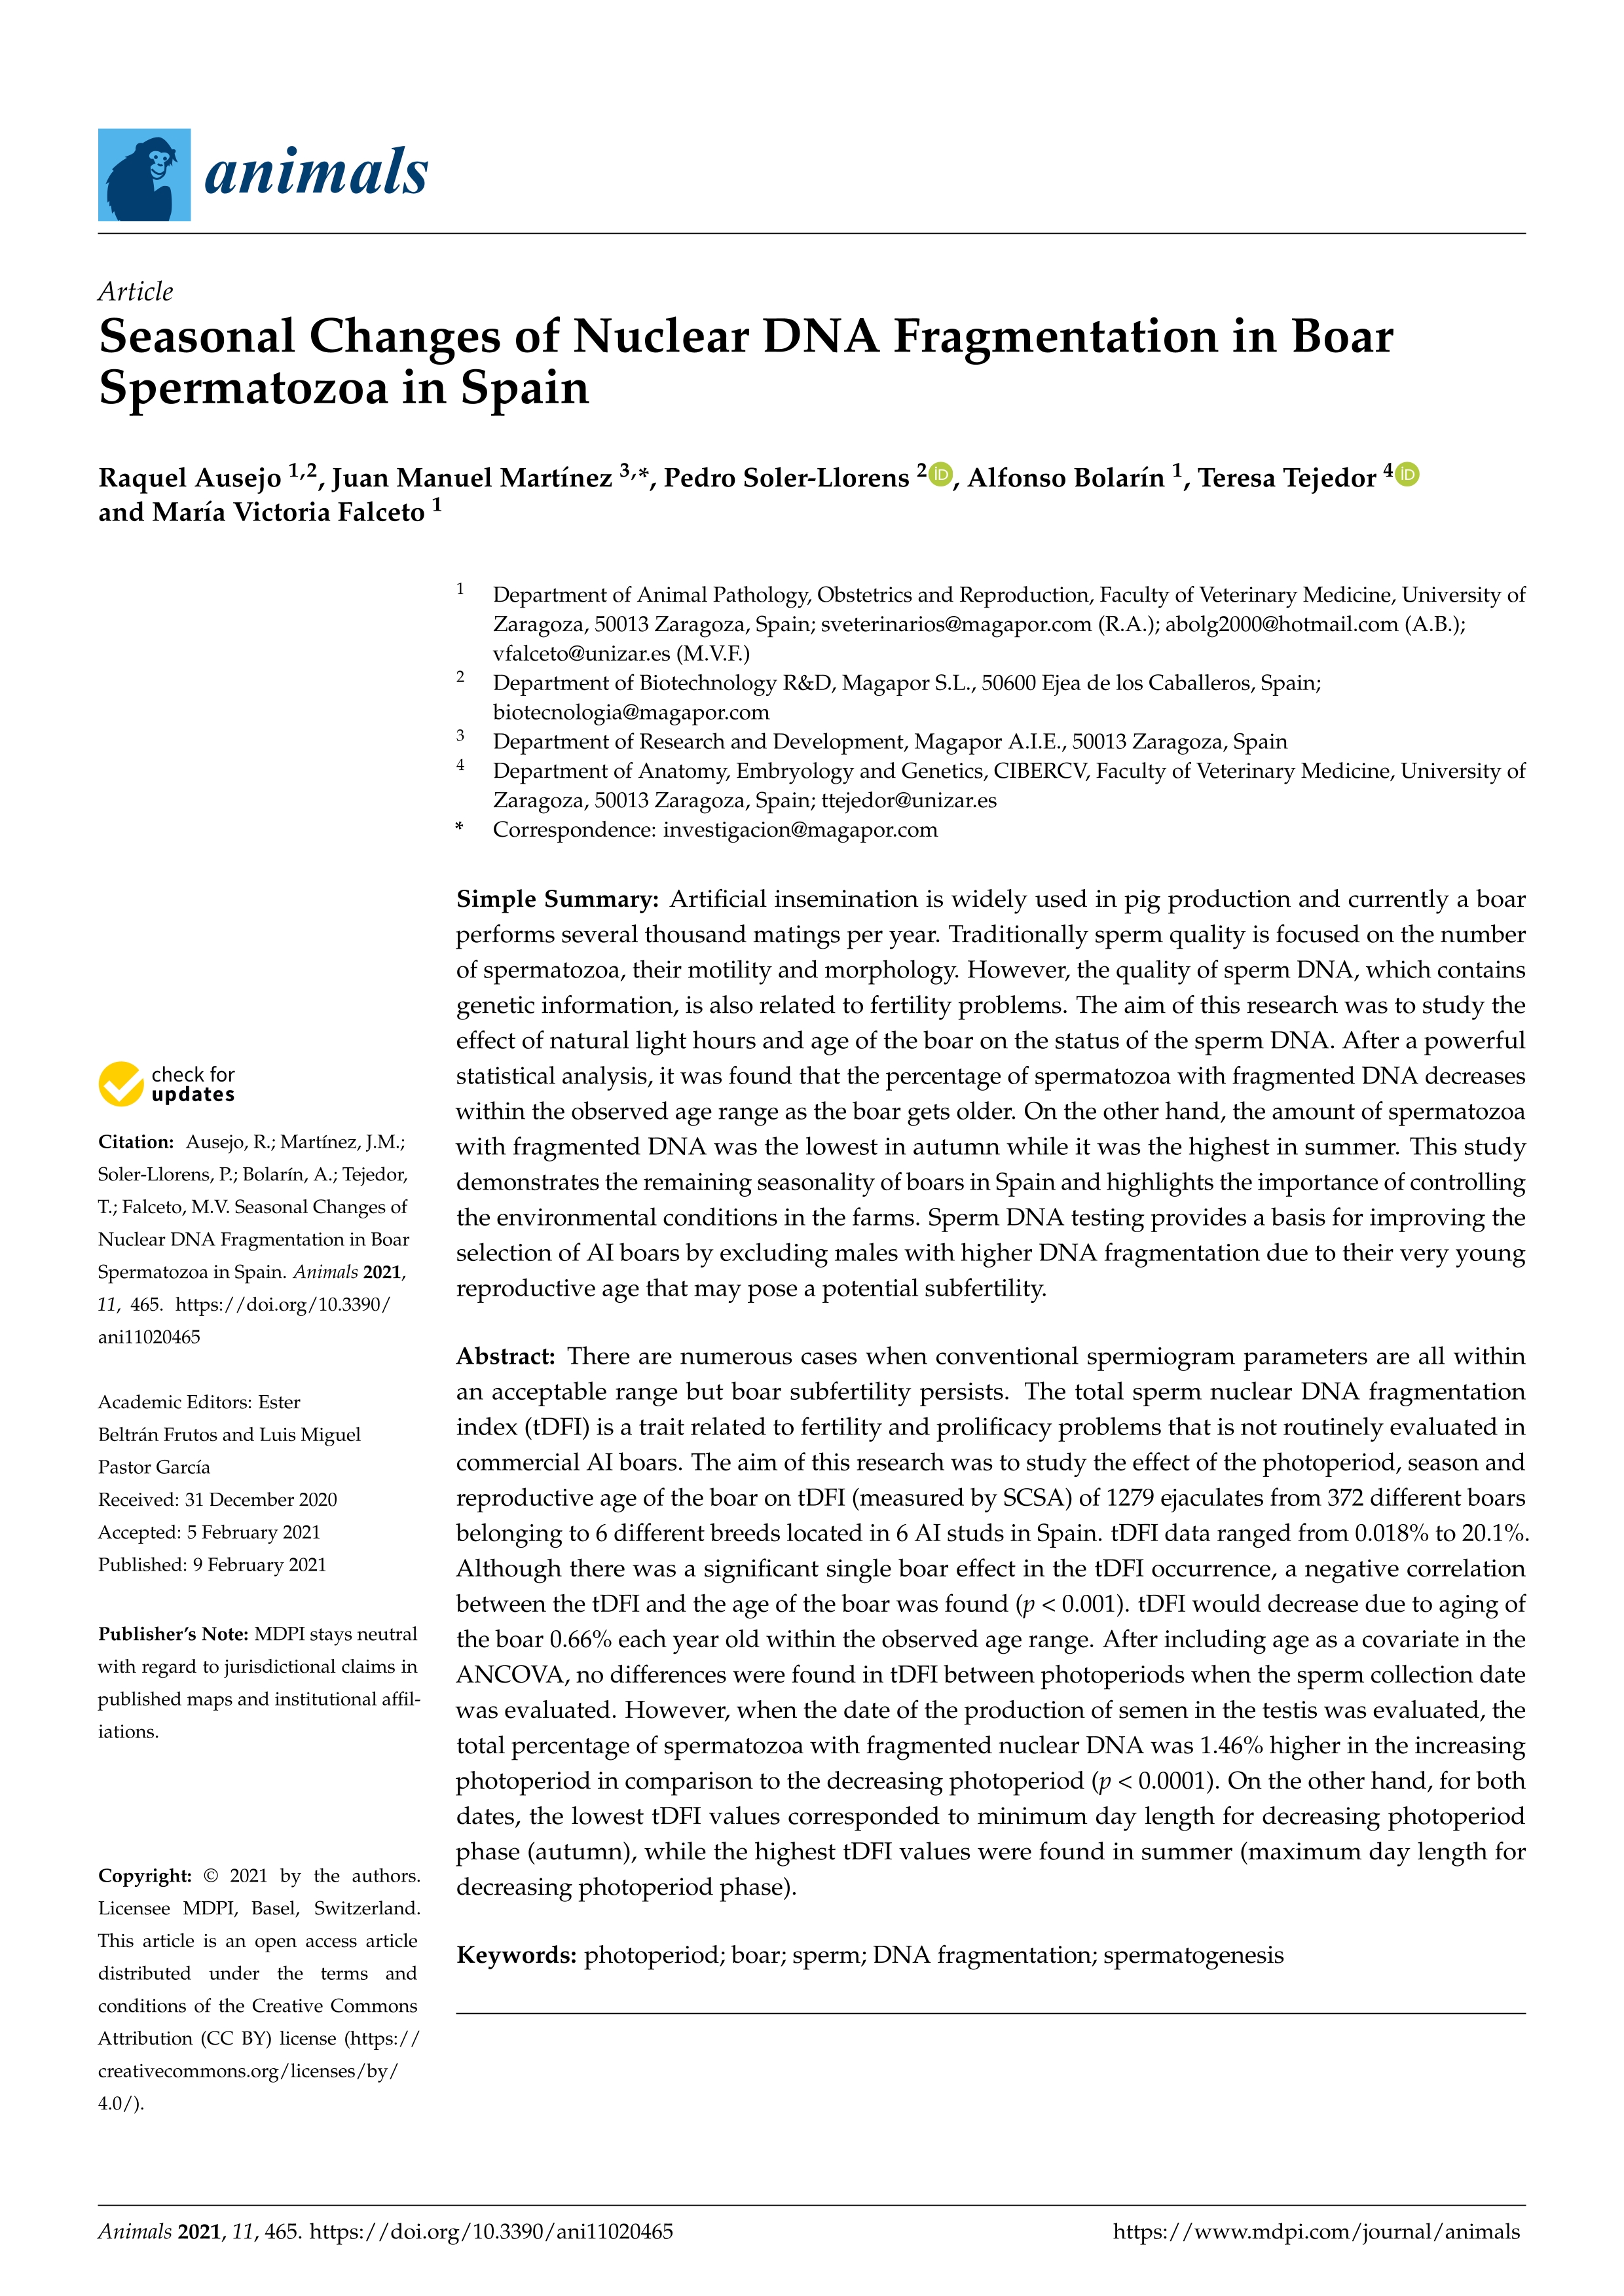 Seasonal changes of nuclear DNA fragmentation in boar spermatozoa in Spain